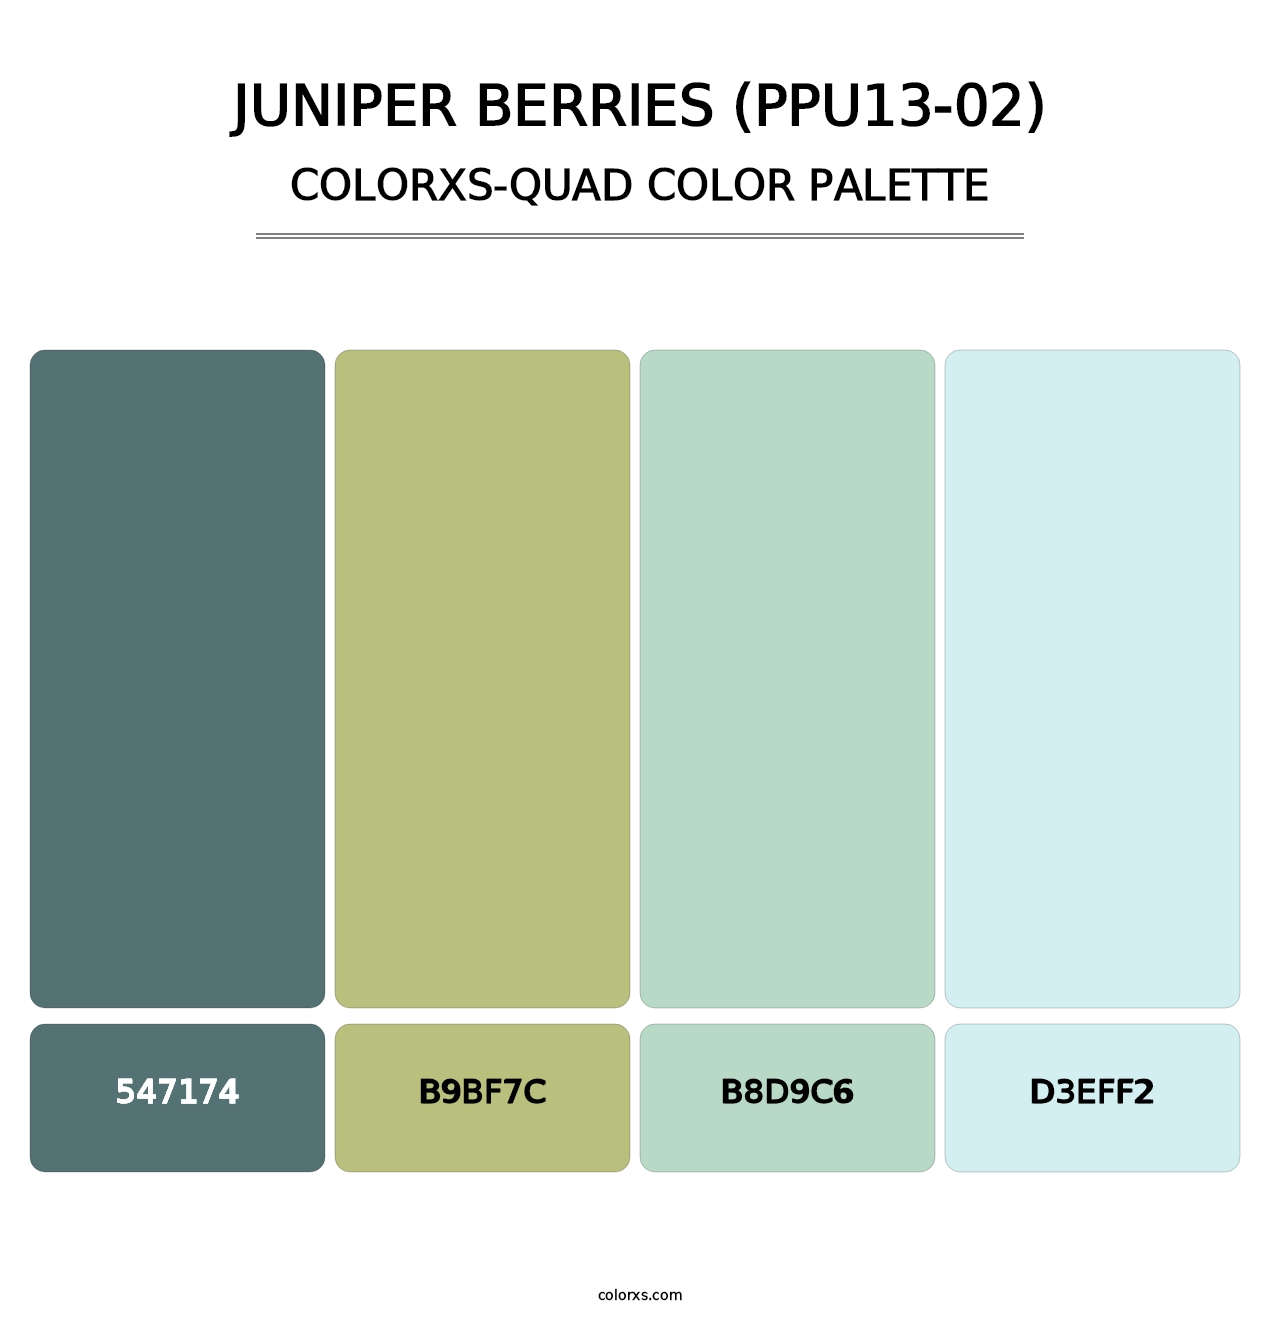 Juniper Berries (PPU13-02) - Colorxs Quad Palette